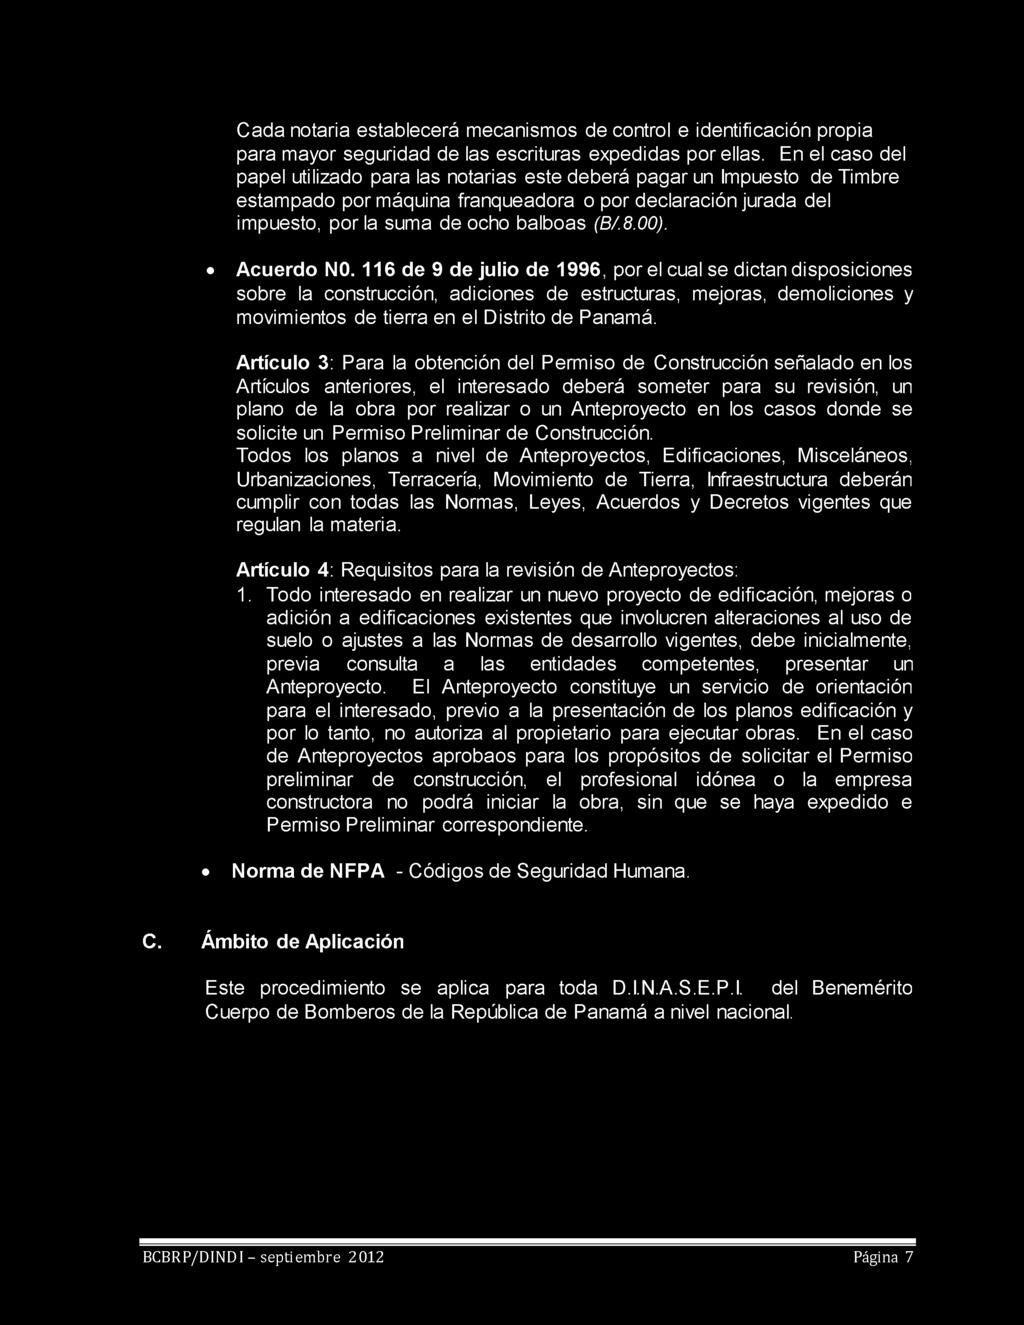 00). Acuerdo N0. 116 de 9 de julio de 1996, por el cual se dictan disposiciones sobre la construcción, adiciones de estructuras, mejoras, demoliciones y movimientos de tierra en el Distrito de Panamá.